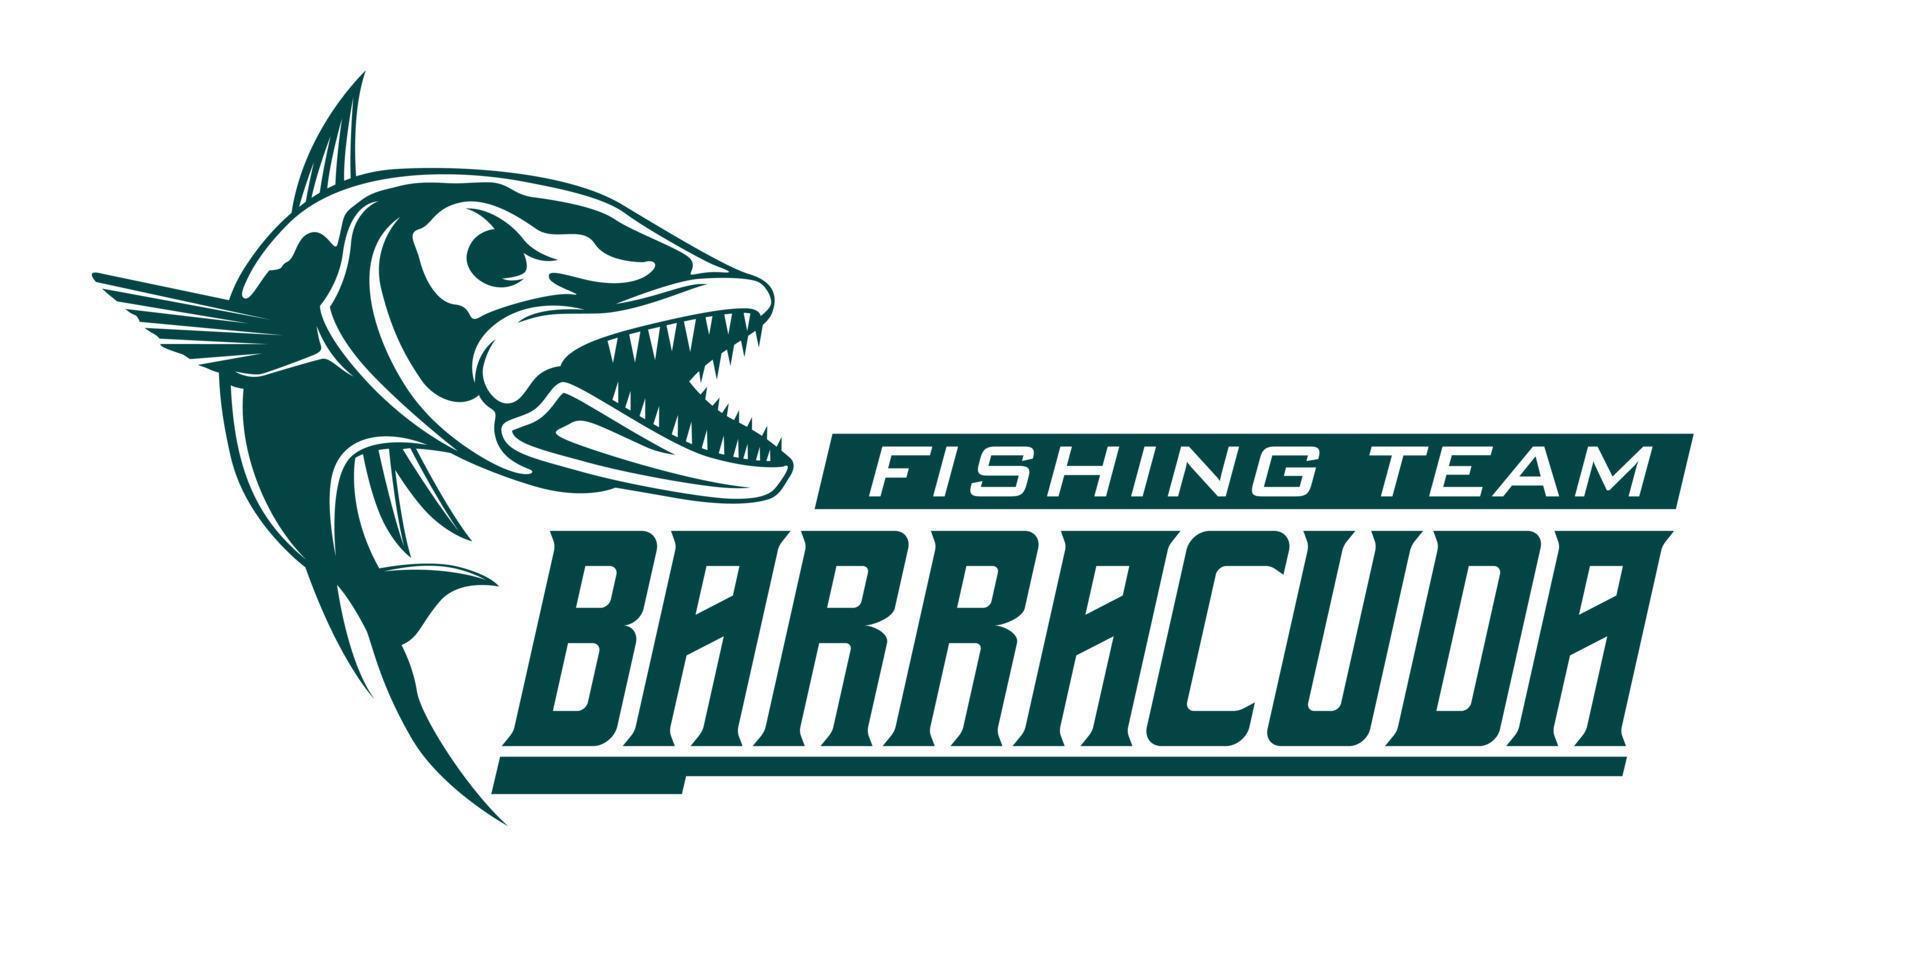 Barracuda-Fischfischer-Logo, springende Fisch-Design-Vorlage, Vektorgrafik. großartig, um es als Ihr beliebiges Fischereiunternehmenslogo zu verwenden vektor